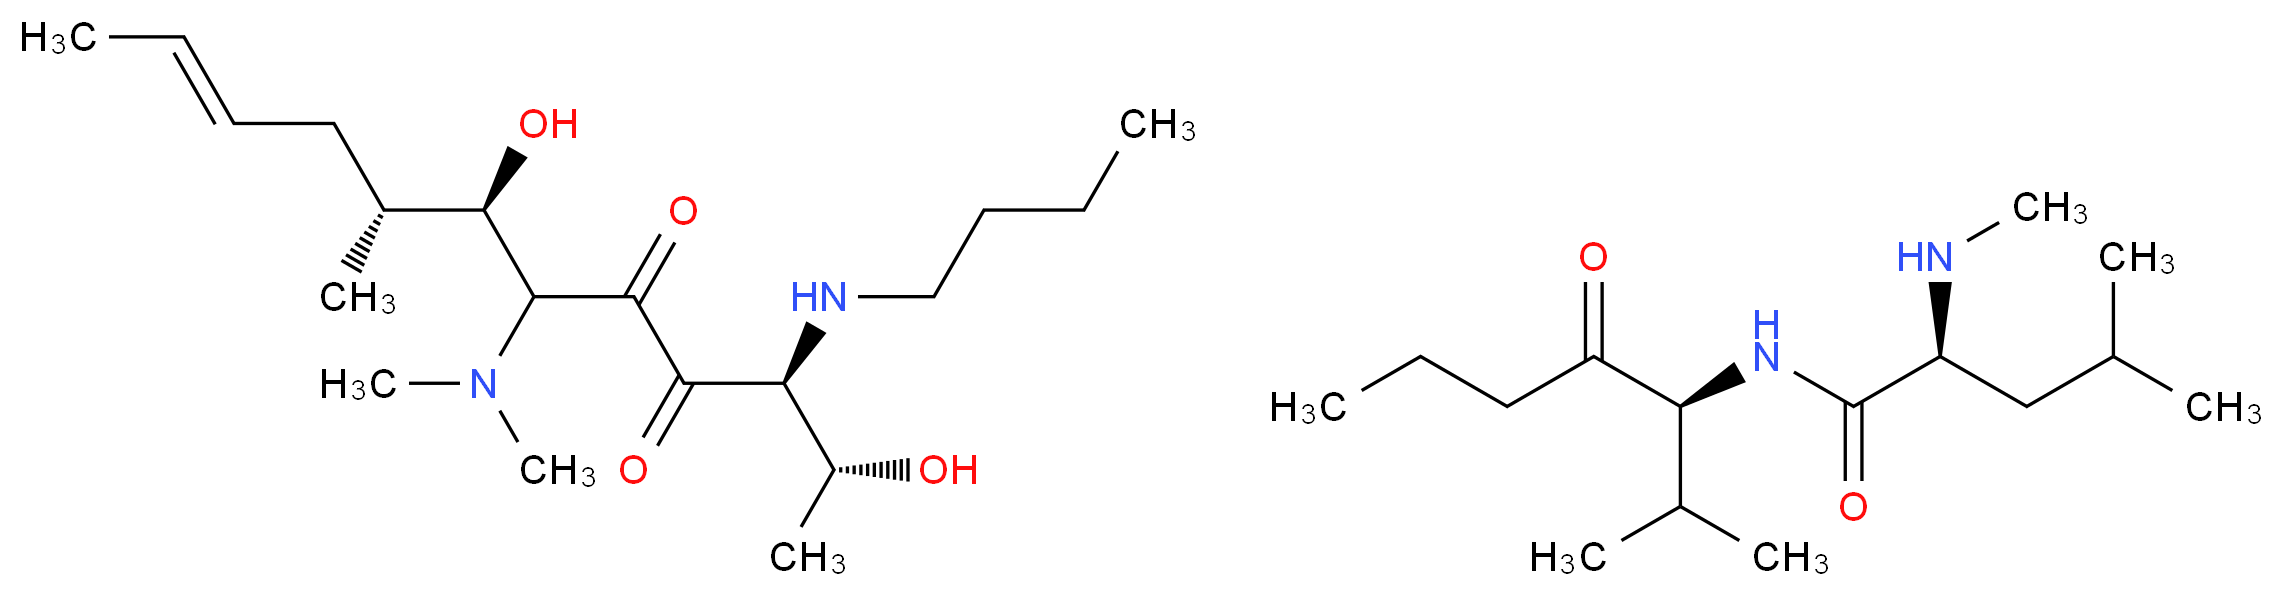 Cyclosporin C_Molecular_structure_CAS_59787-61-0)